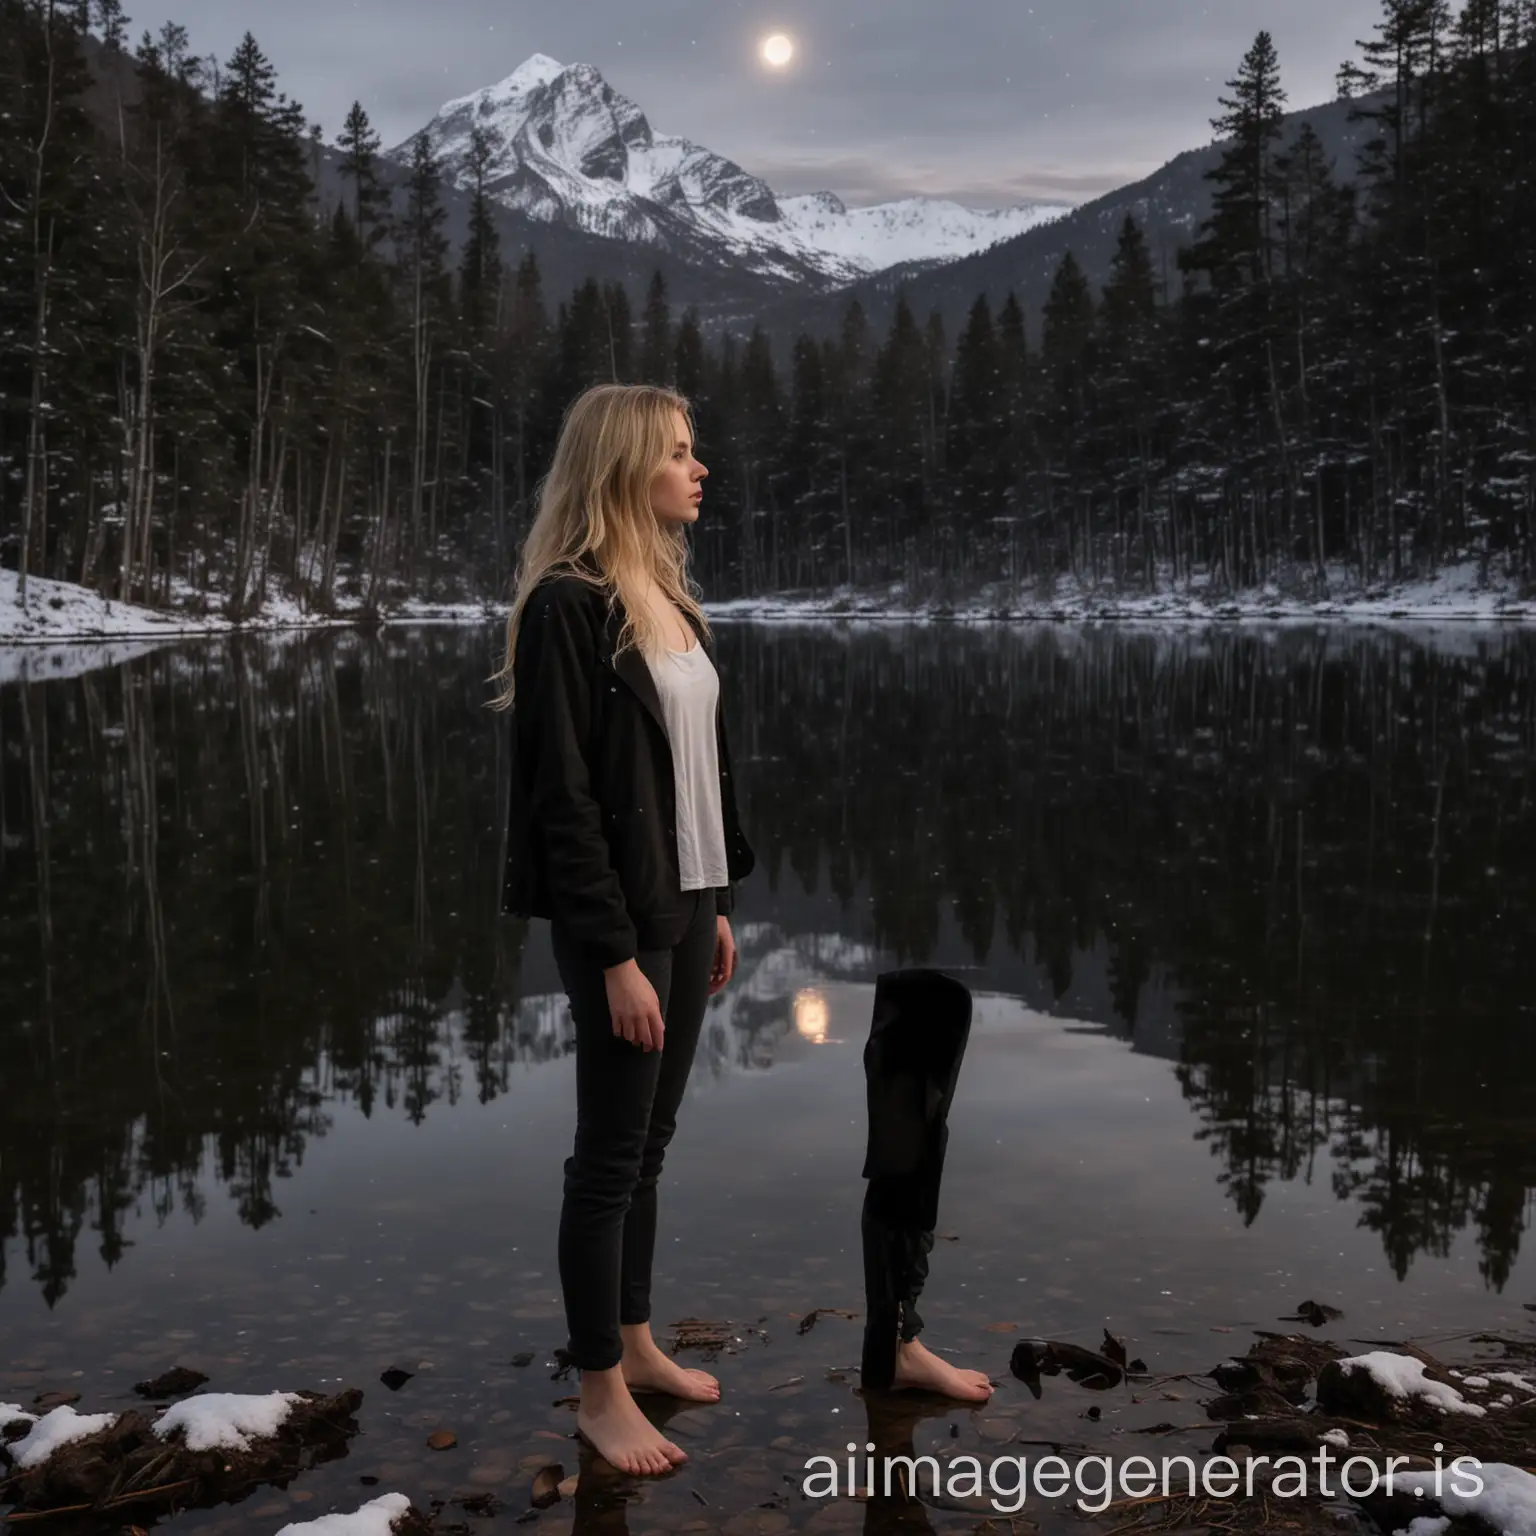 une jeune fille de 19 ans, blonde, pieds nus, qui porte un pantalon noir et une veste noire, se tient face à un lac dans une forêt sombre, pendant une nuit de pleine lune. Une montagne enneigée se trouve en arrière-plan. 